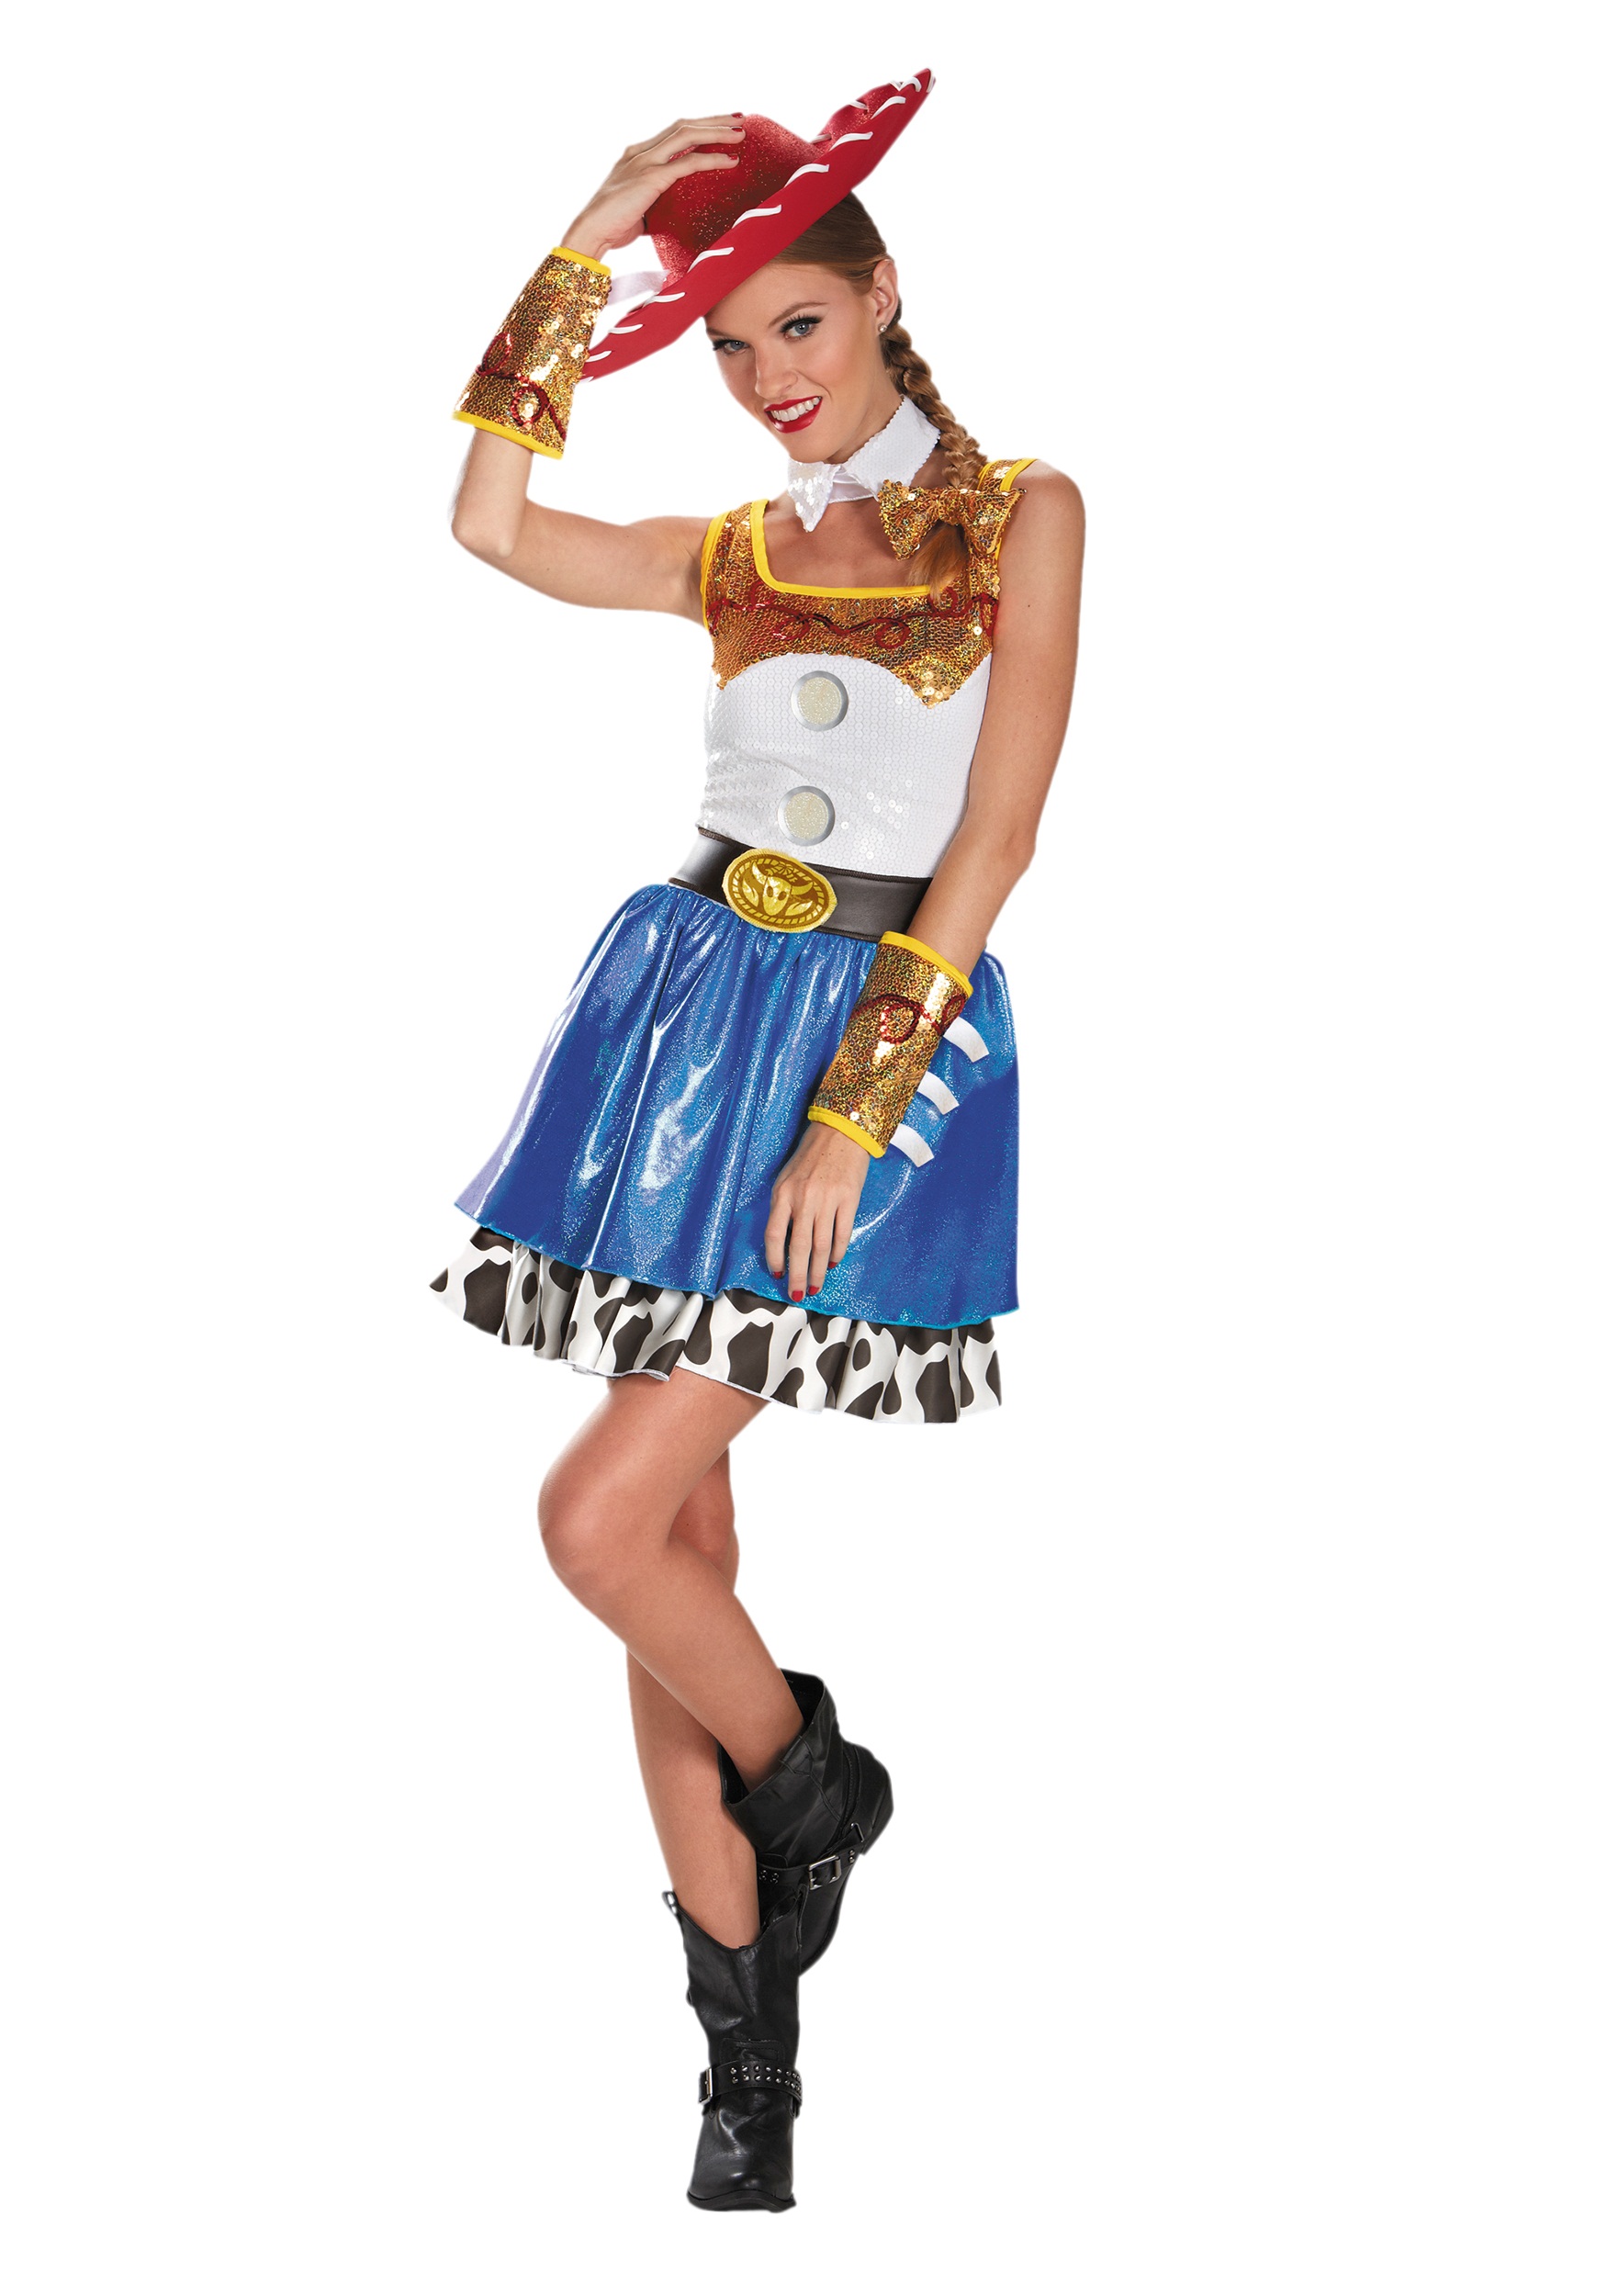 jessie toy story costume dress